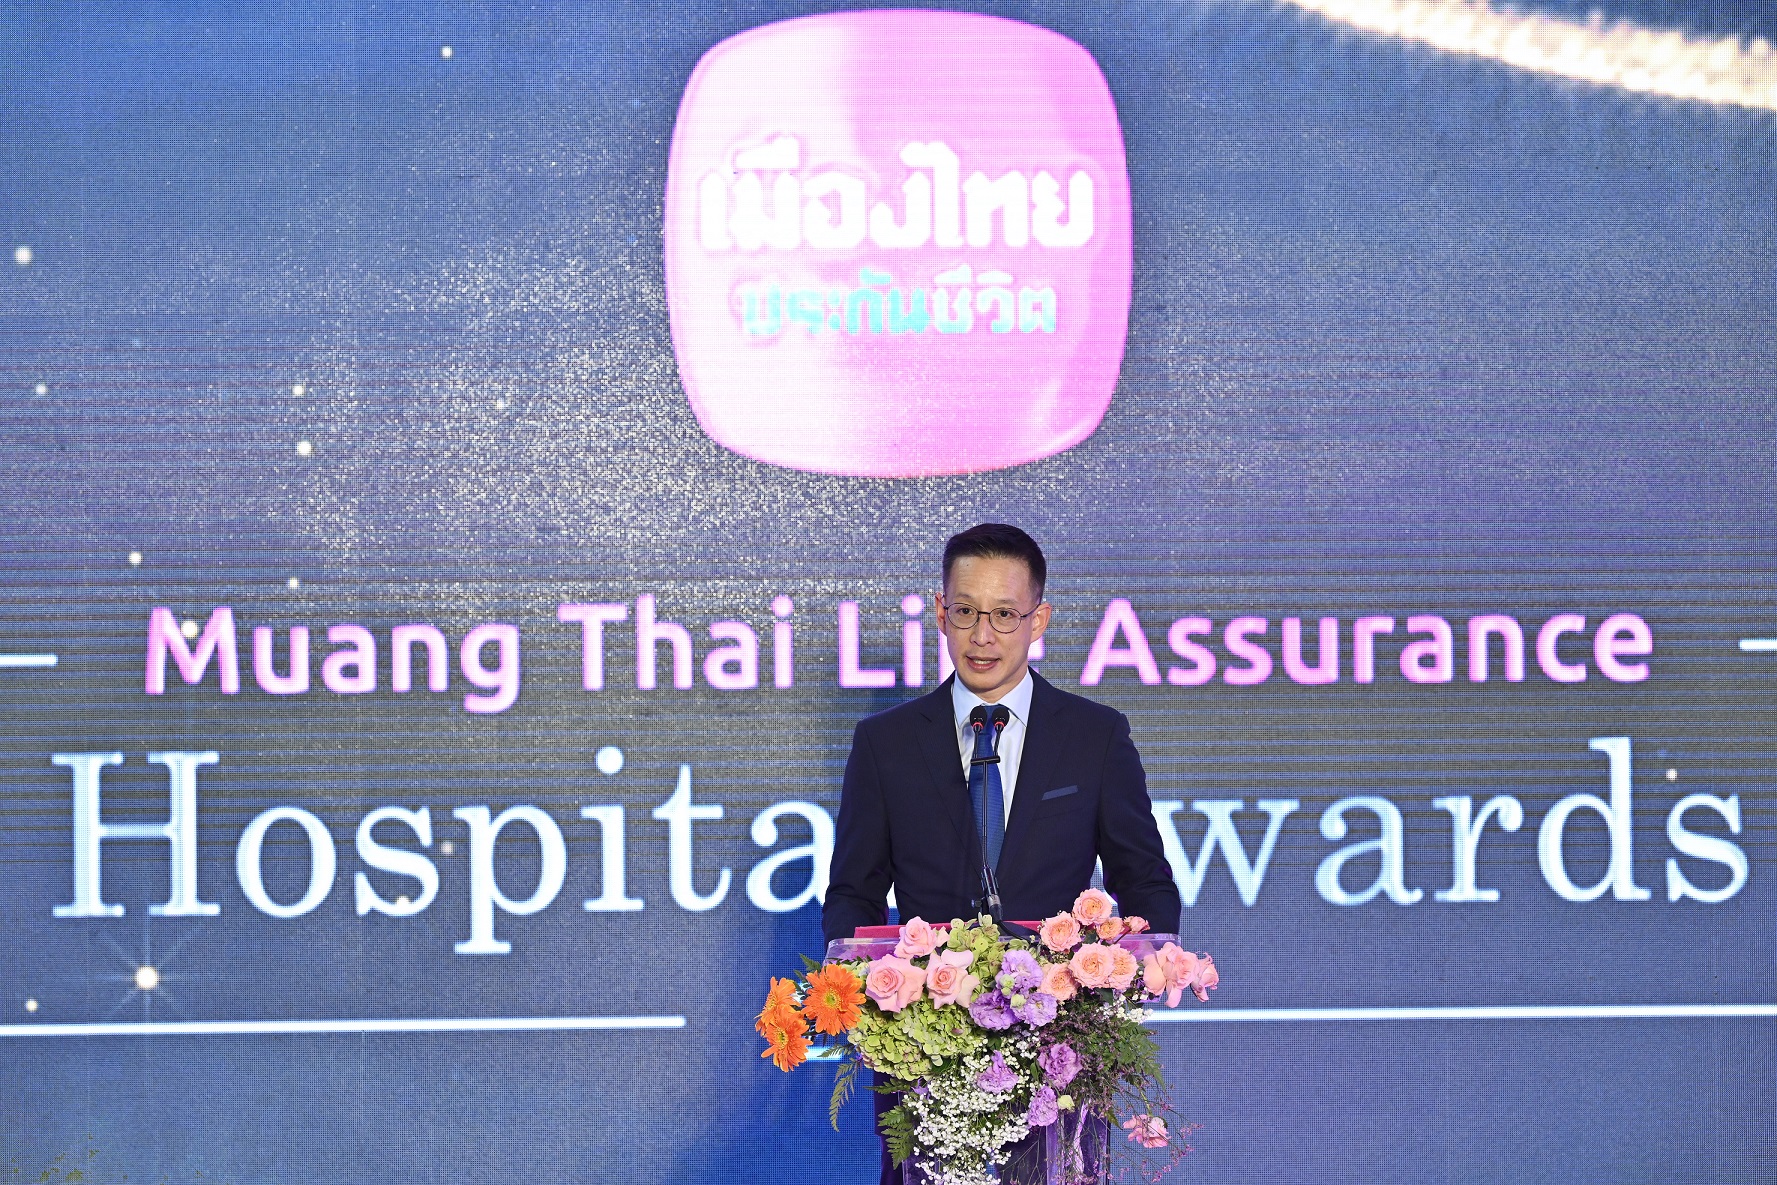 เมืองไทยประกันชีวิต จัดพิธีมอบรางวัลเกียรติยศ  “Muang Thai Life Assurance Hospital Awards 2022”